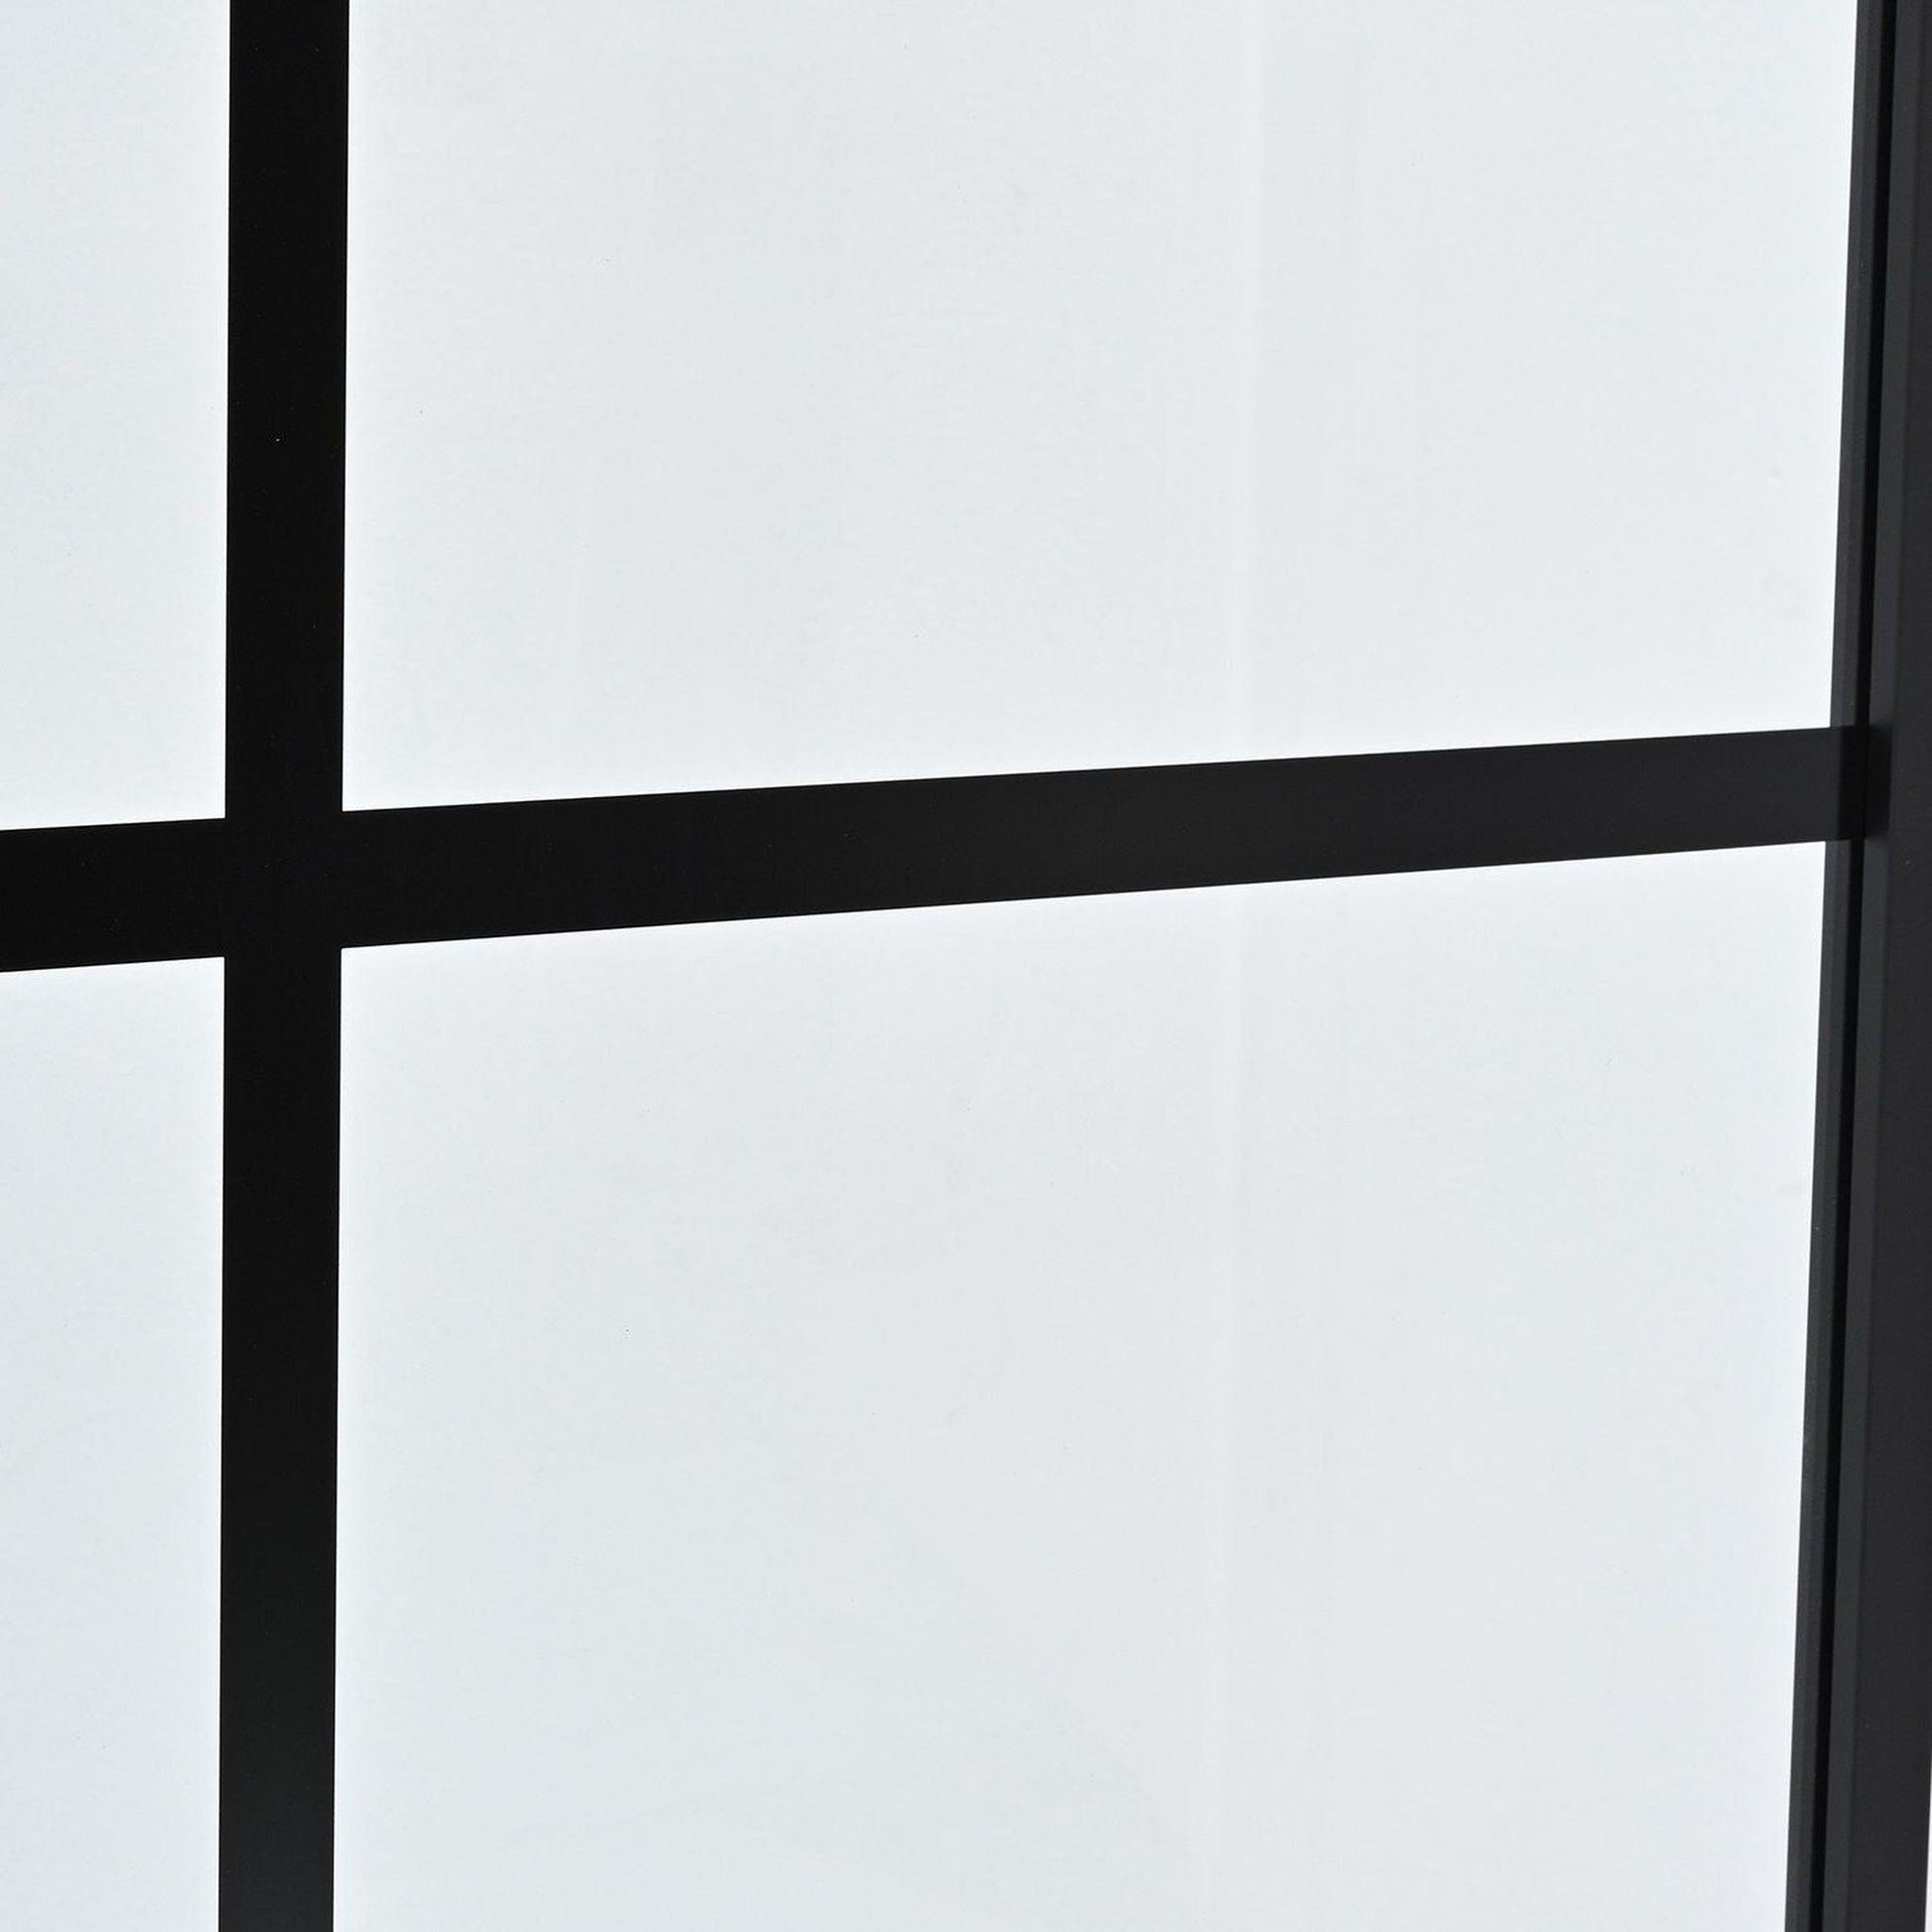 Vinnova Azpeitia 34" x 74" Framed Fixed Glass Panel in Matte Black Finish